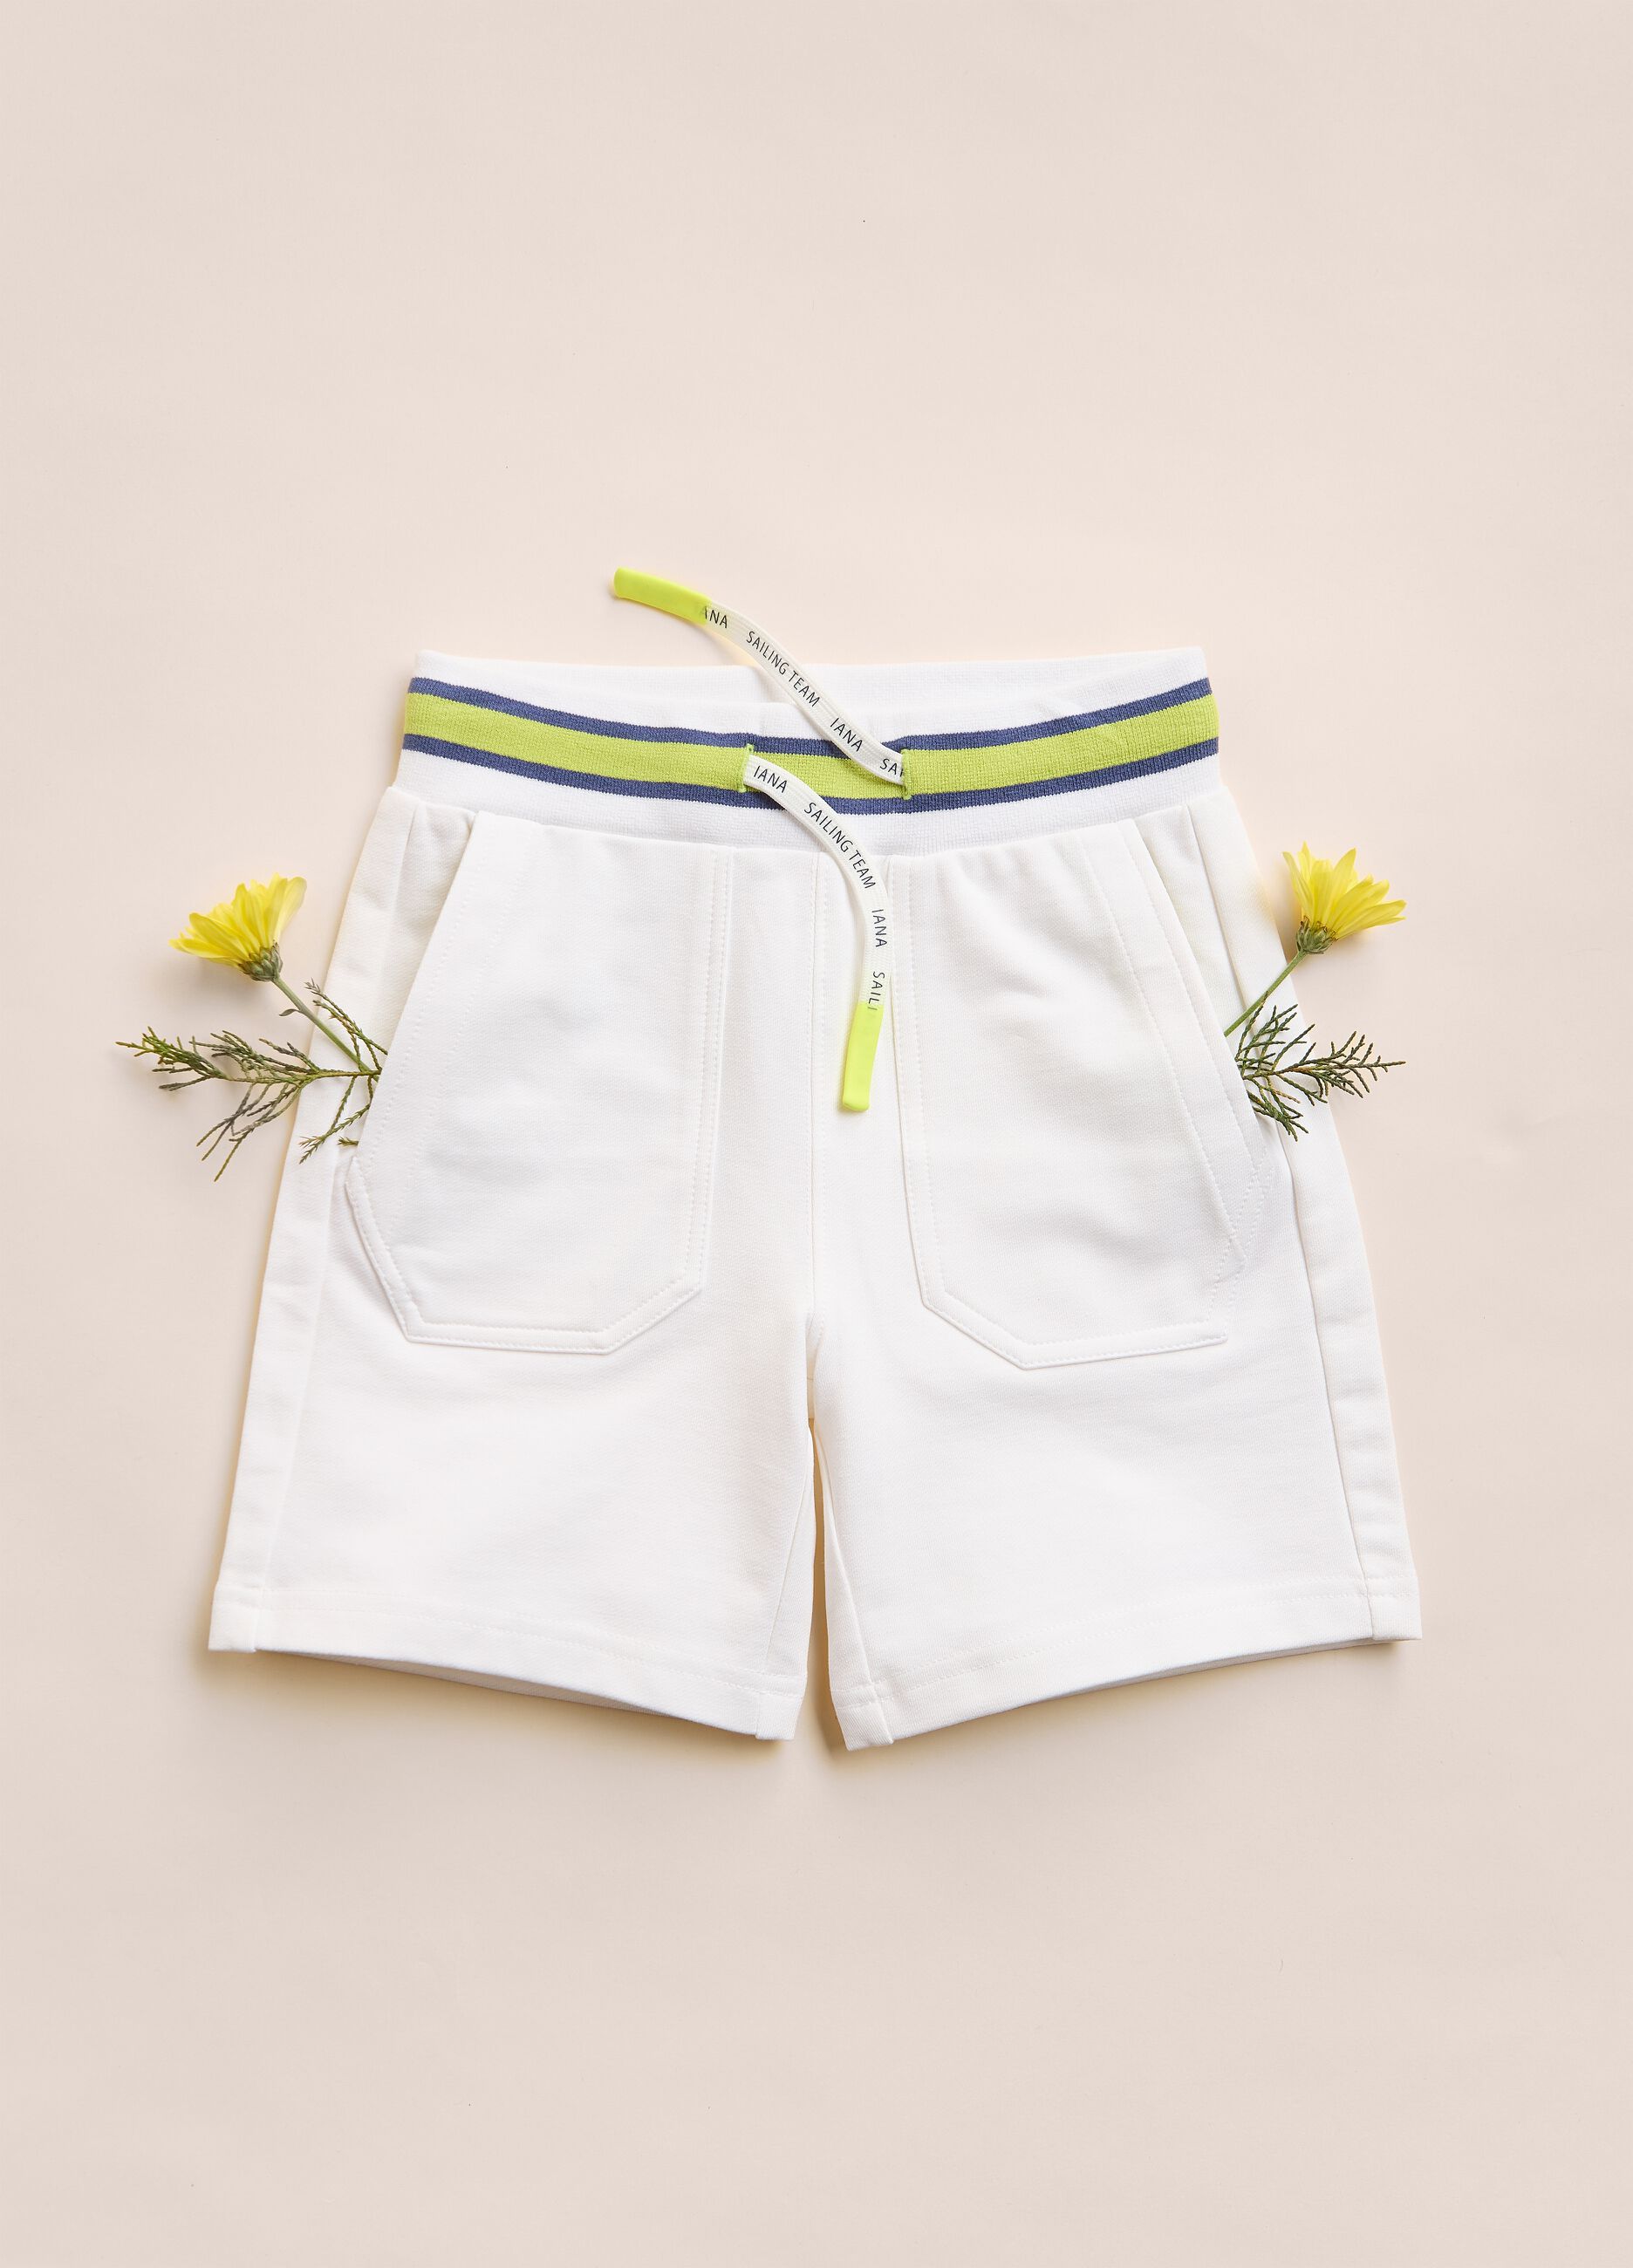 IANA stretch cotton shorts